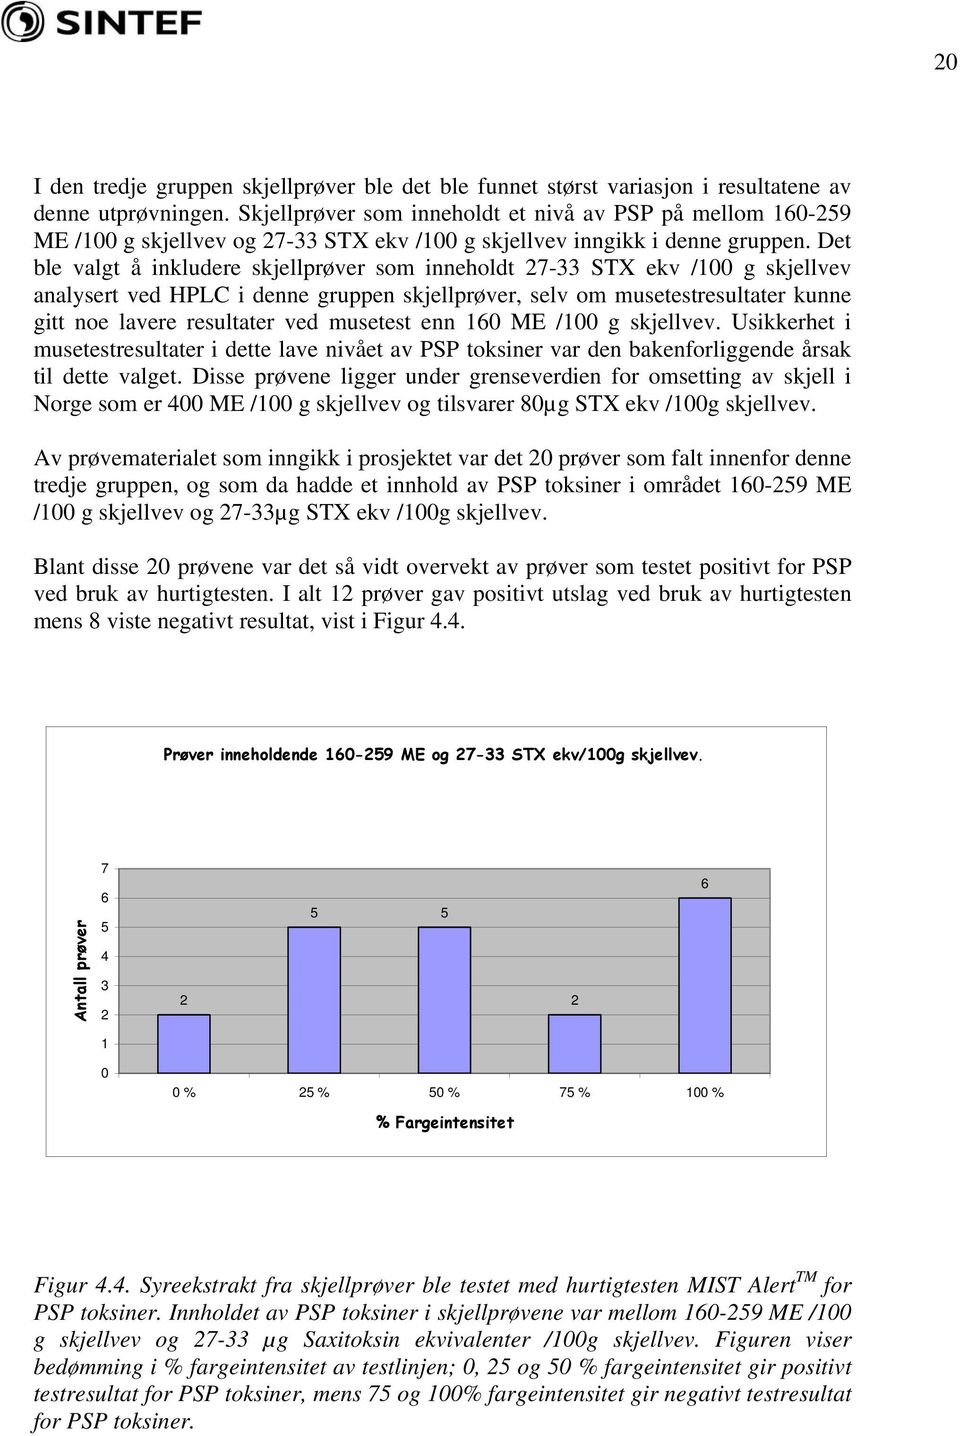 Det ble valgt å inkludere skjellprøver som inneholdt 733 STX ekv /1 g skjellvev analysert ved HPLC i denne gruppen skjellprøver, selv om musetestresultater kunne gitt noe lavere resultater ved